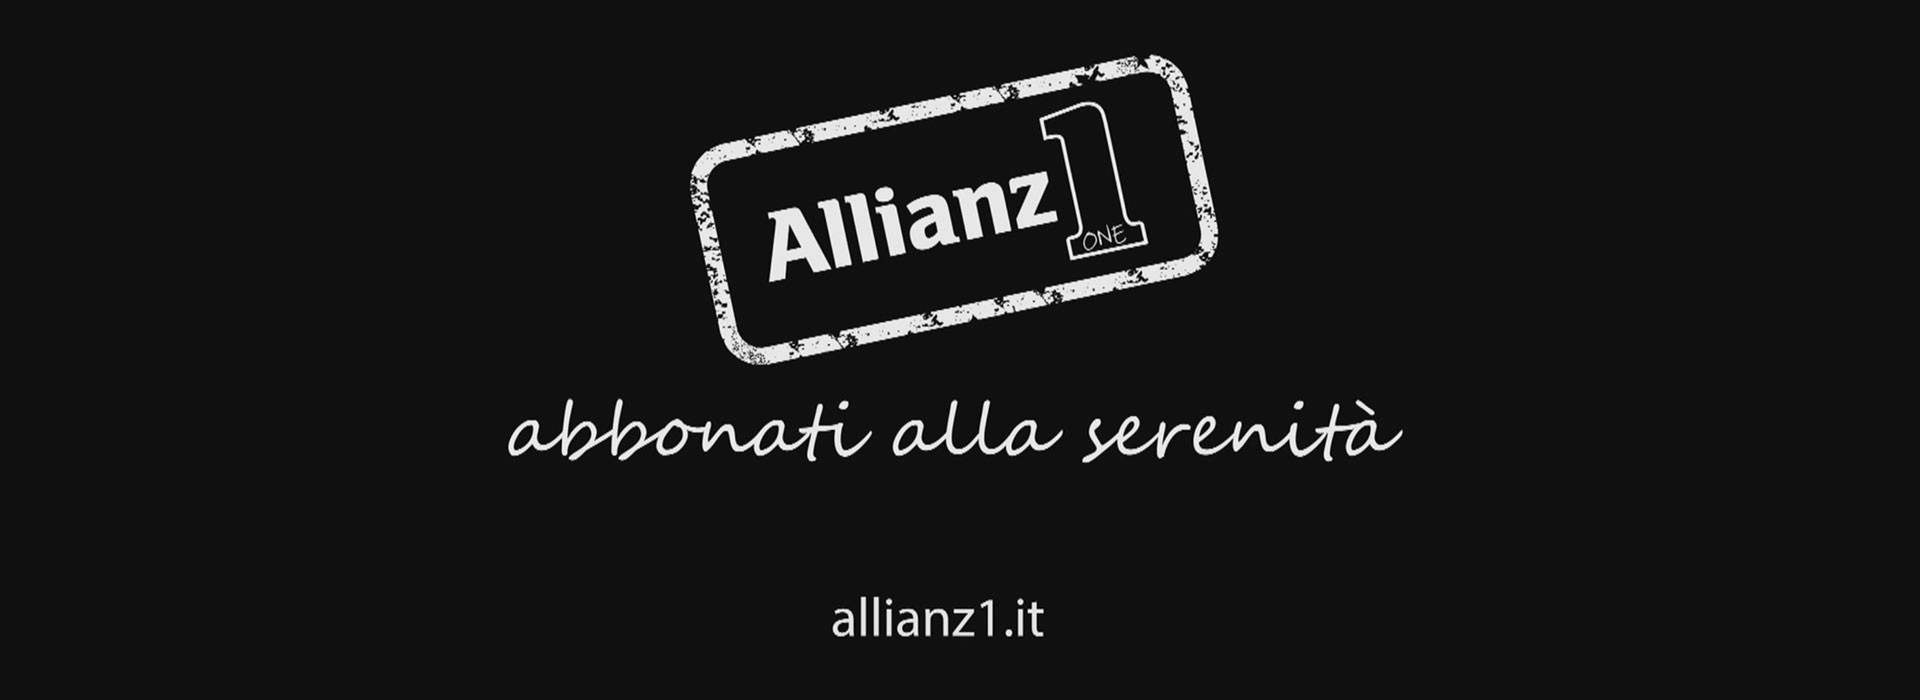 allianz-banner